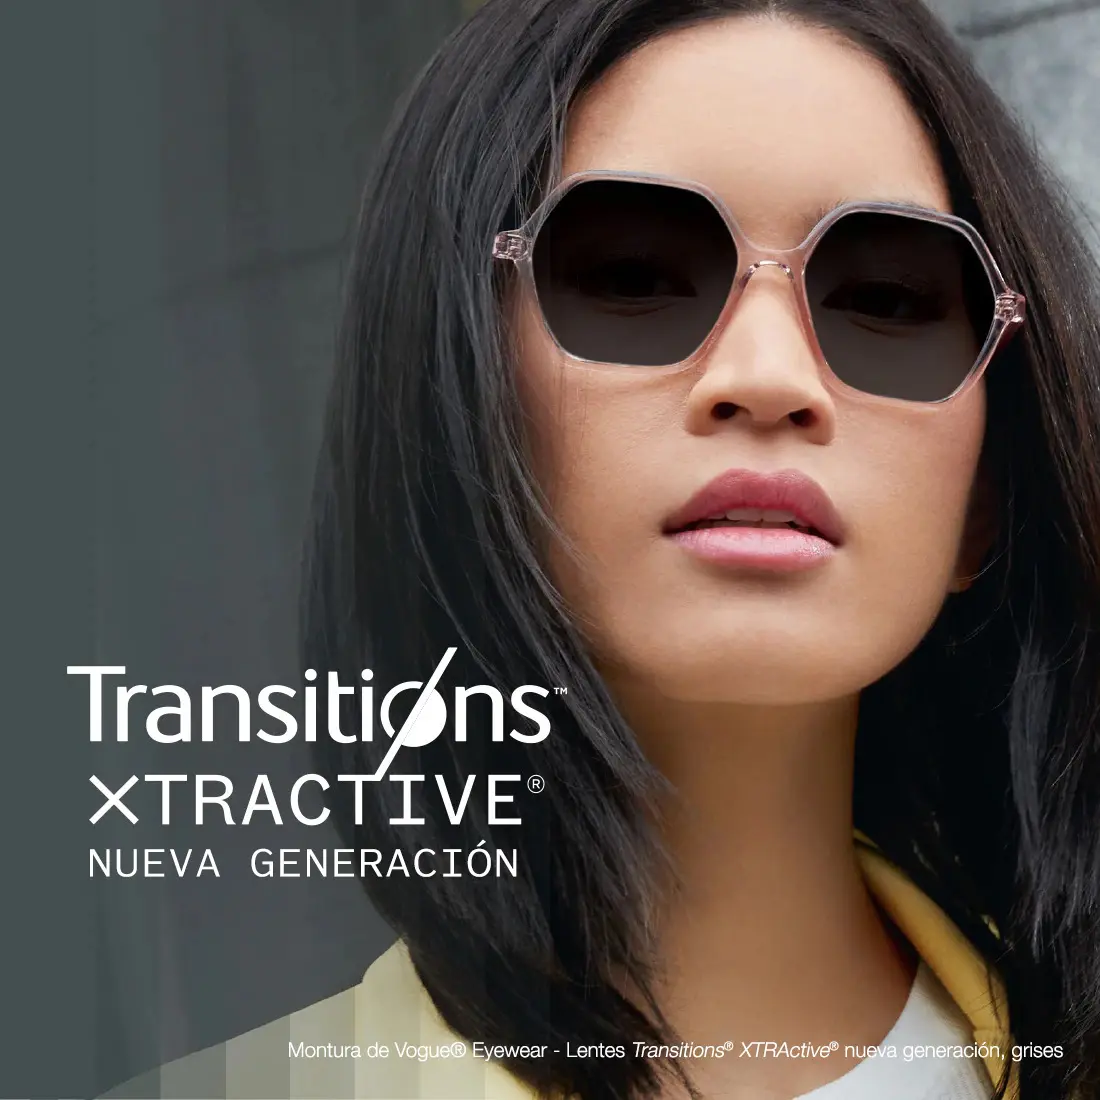 lentes cristales transitions - Qué tan buenos son los lentes Transitions